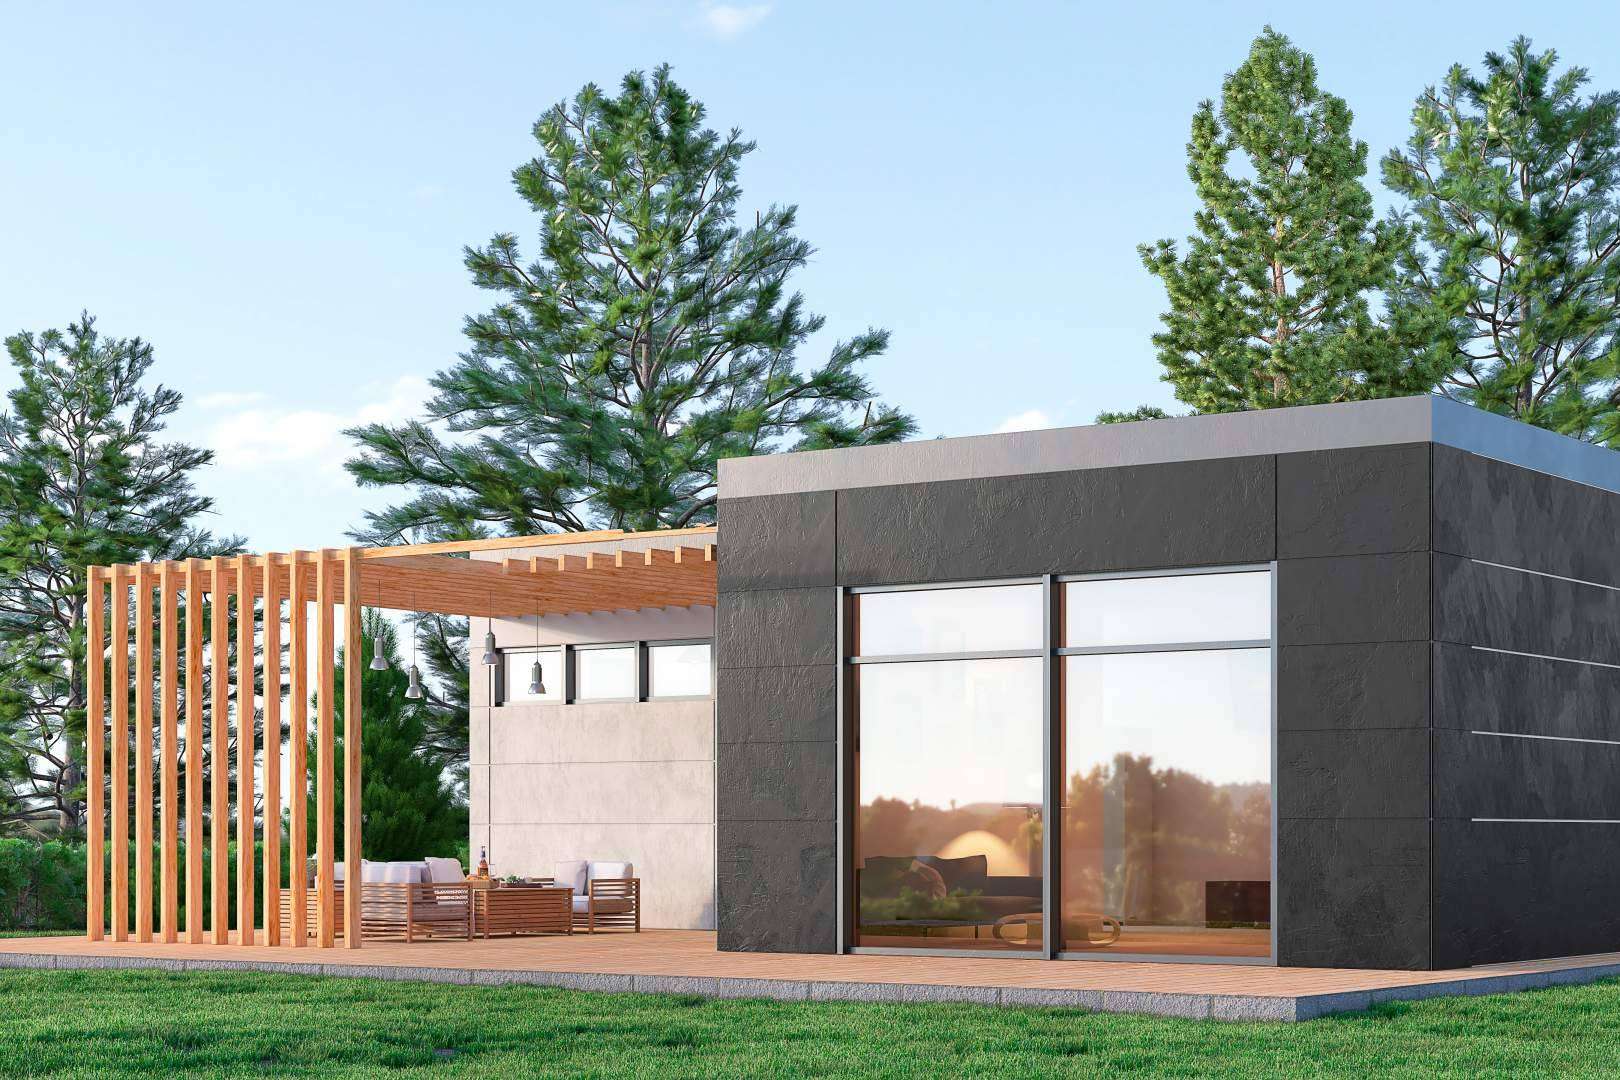 Inversiones en casas modulares energéticamente eficientes de la mano de Kirsan Invest